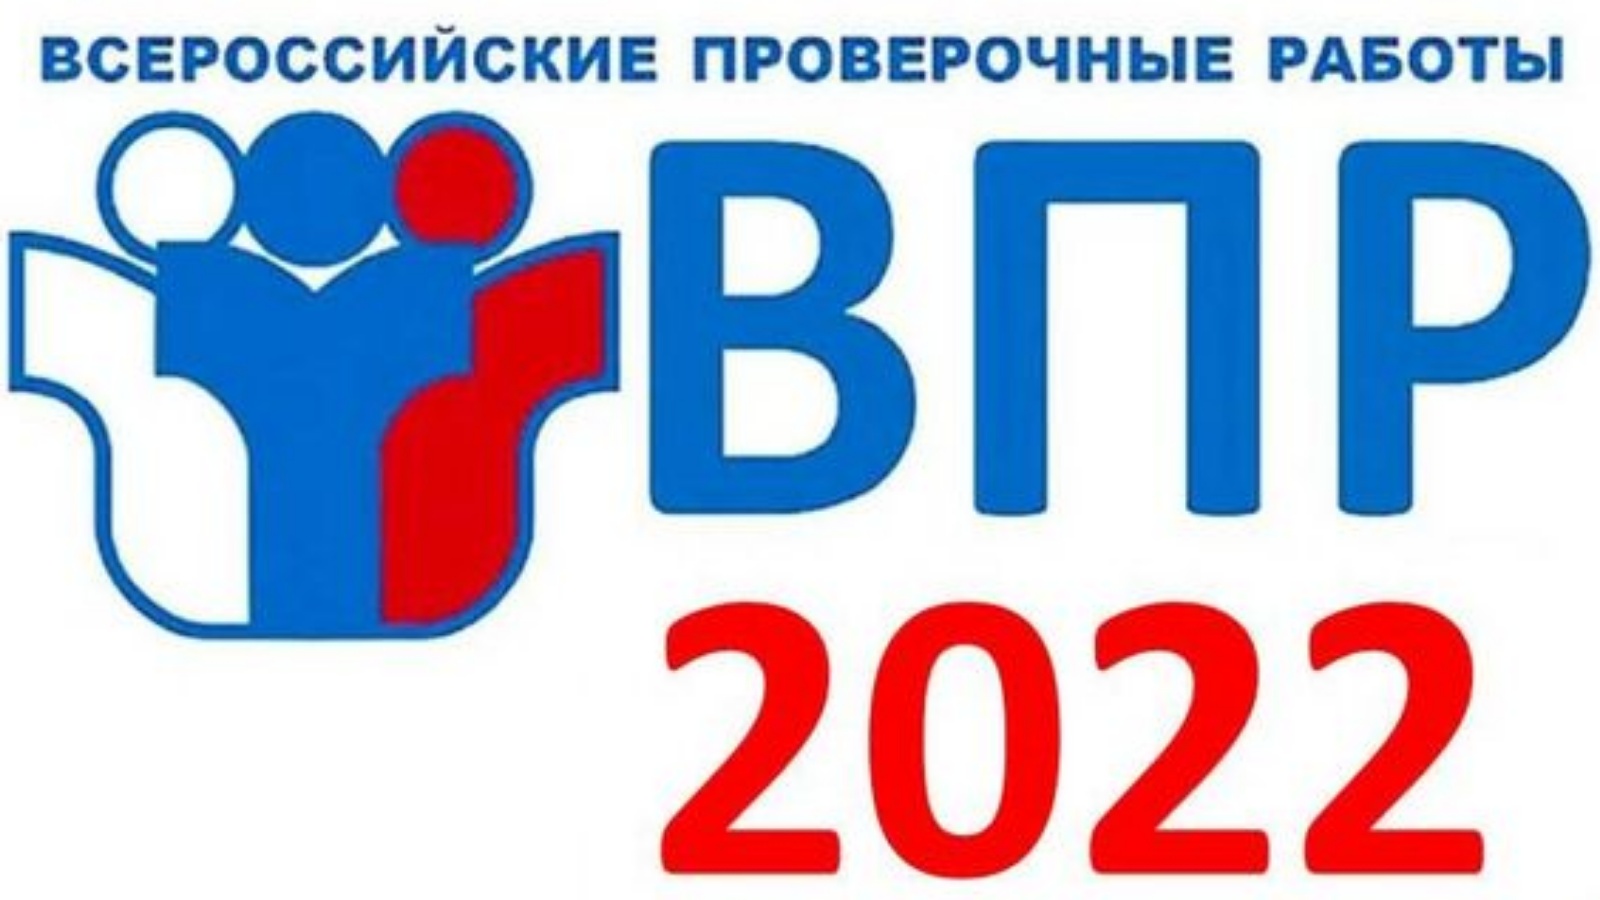 Впр 1488. ВПР 2022. ВПР 2022 осень. Логотип ВПР 2022. ВПР 2022 год.